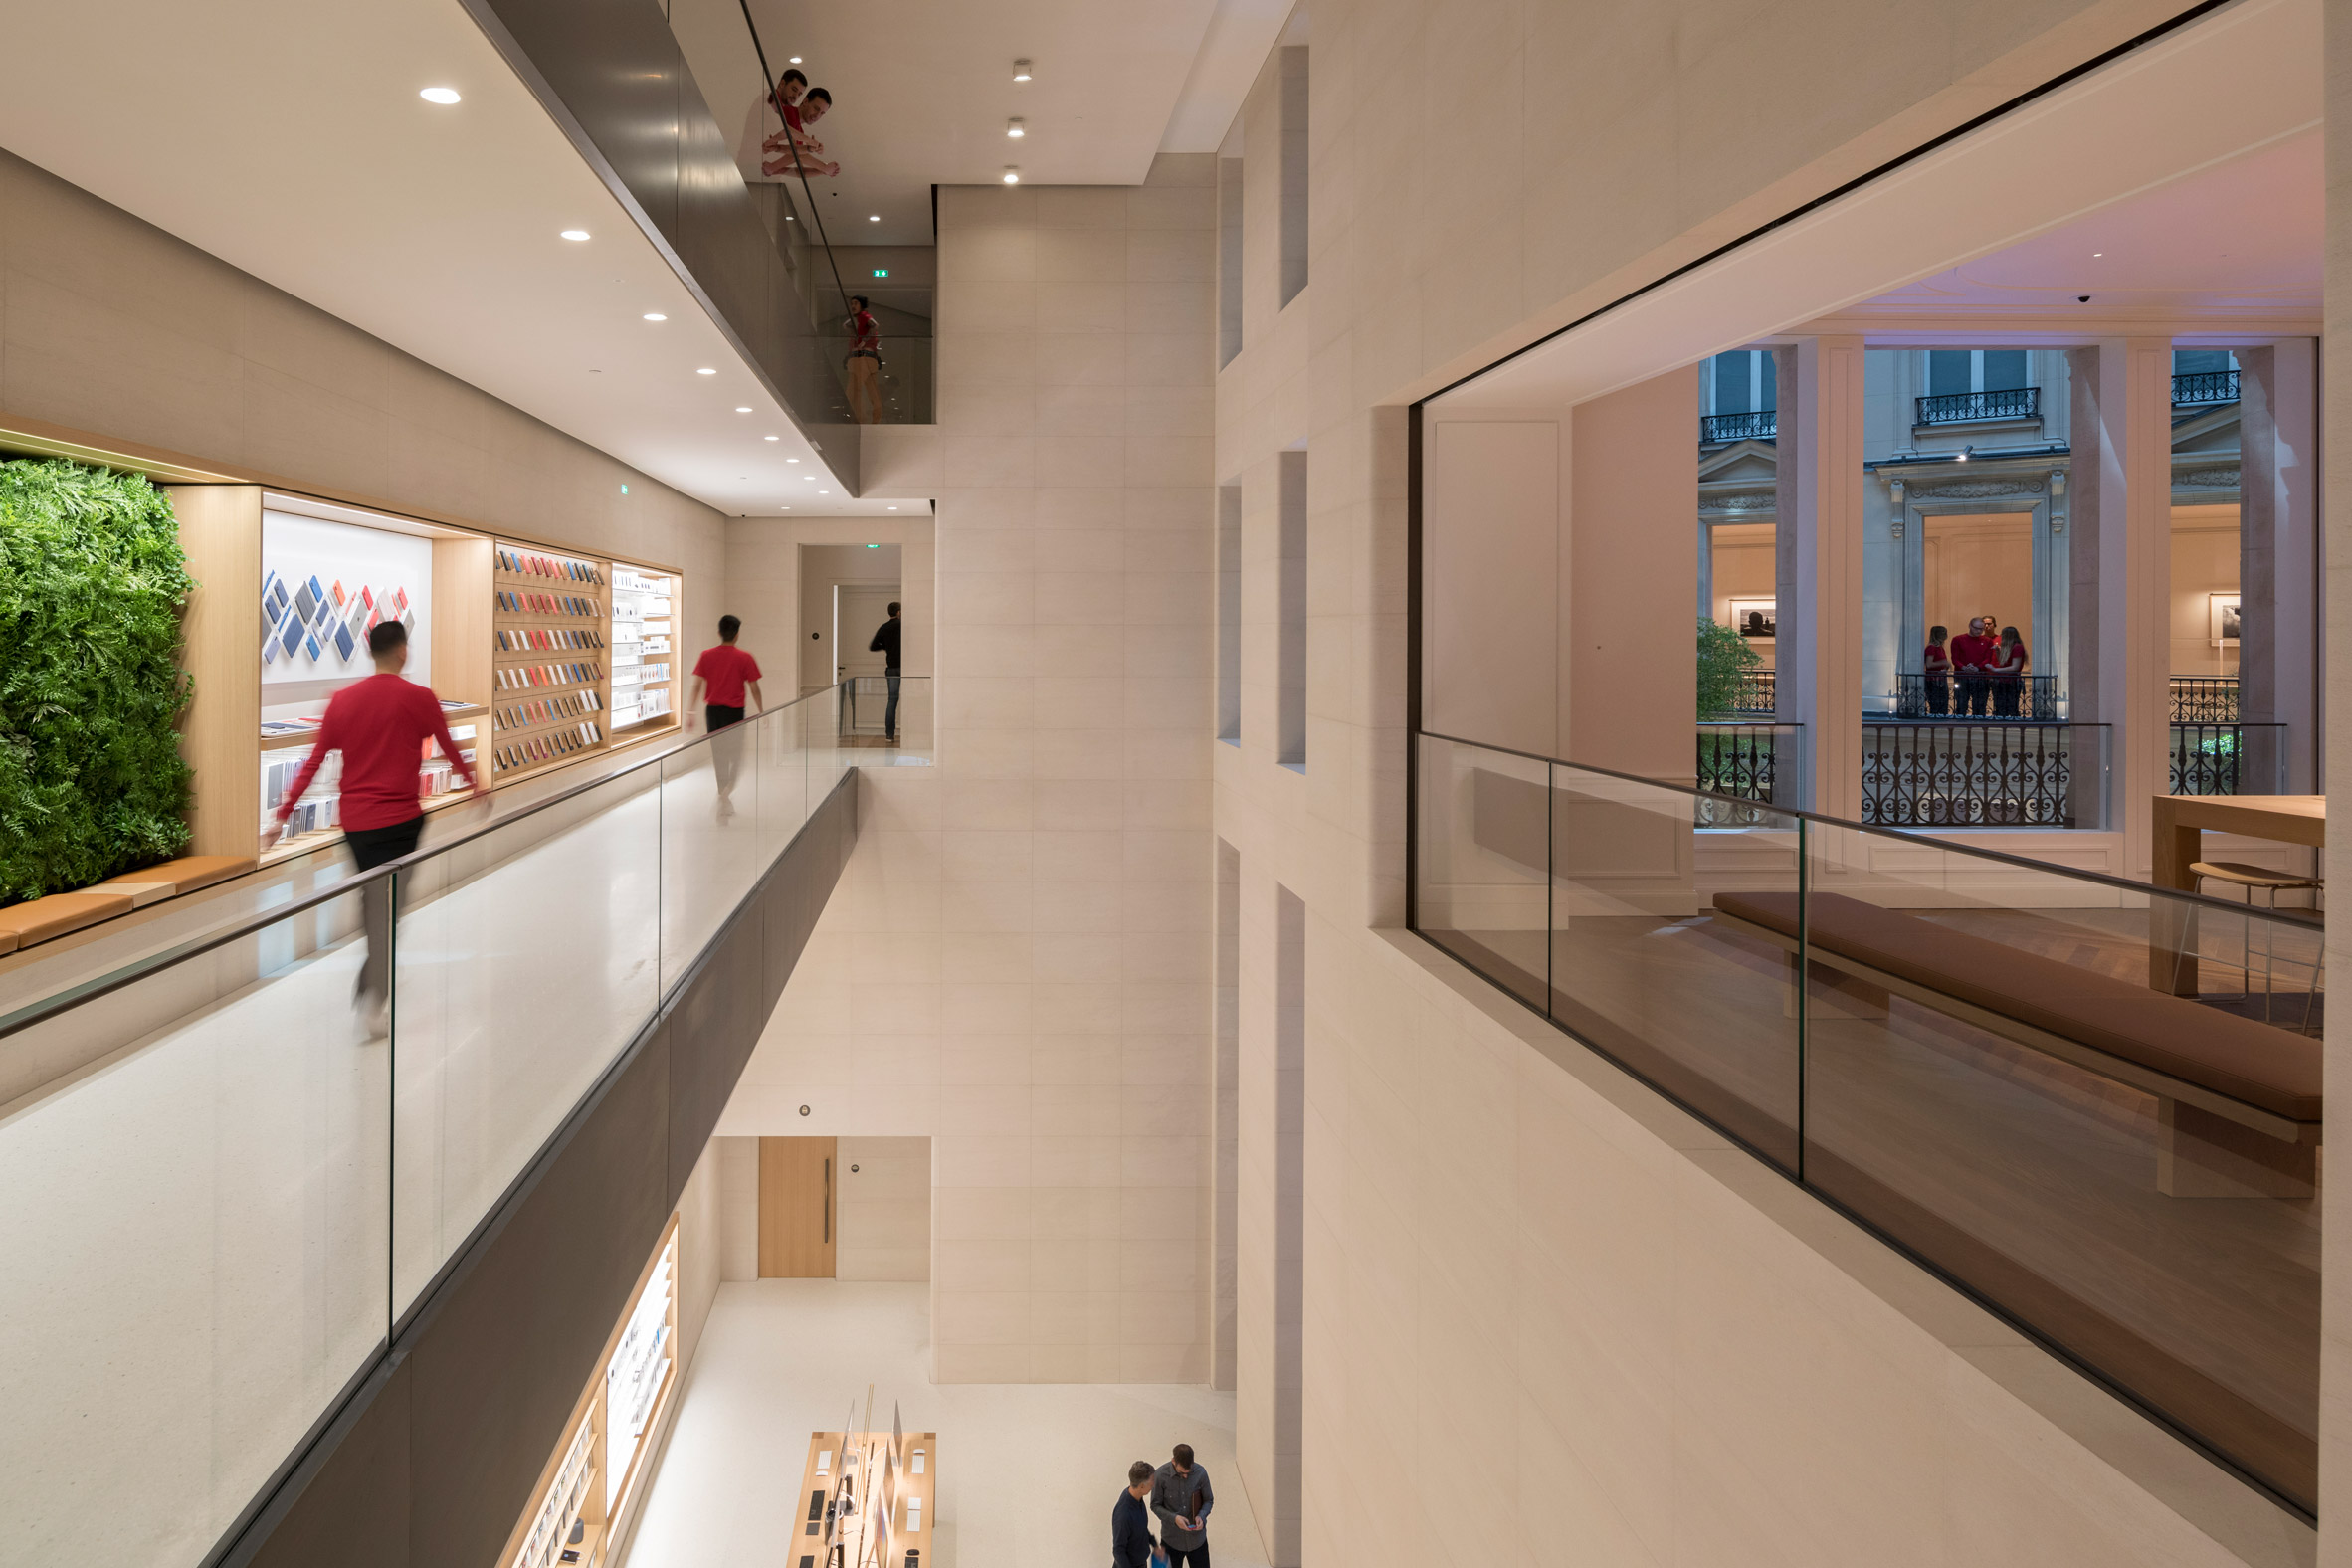 Foster + Partners' unveils Apple Store on Champs-Élysées in Paris